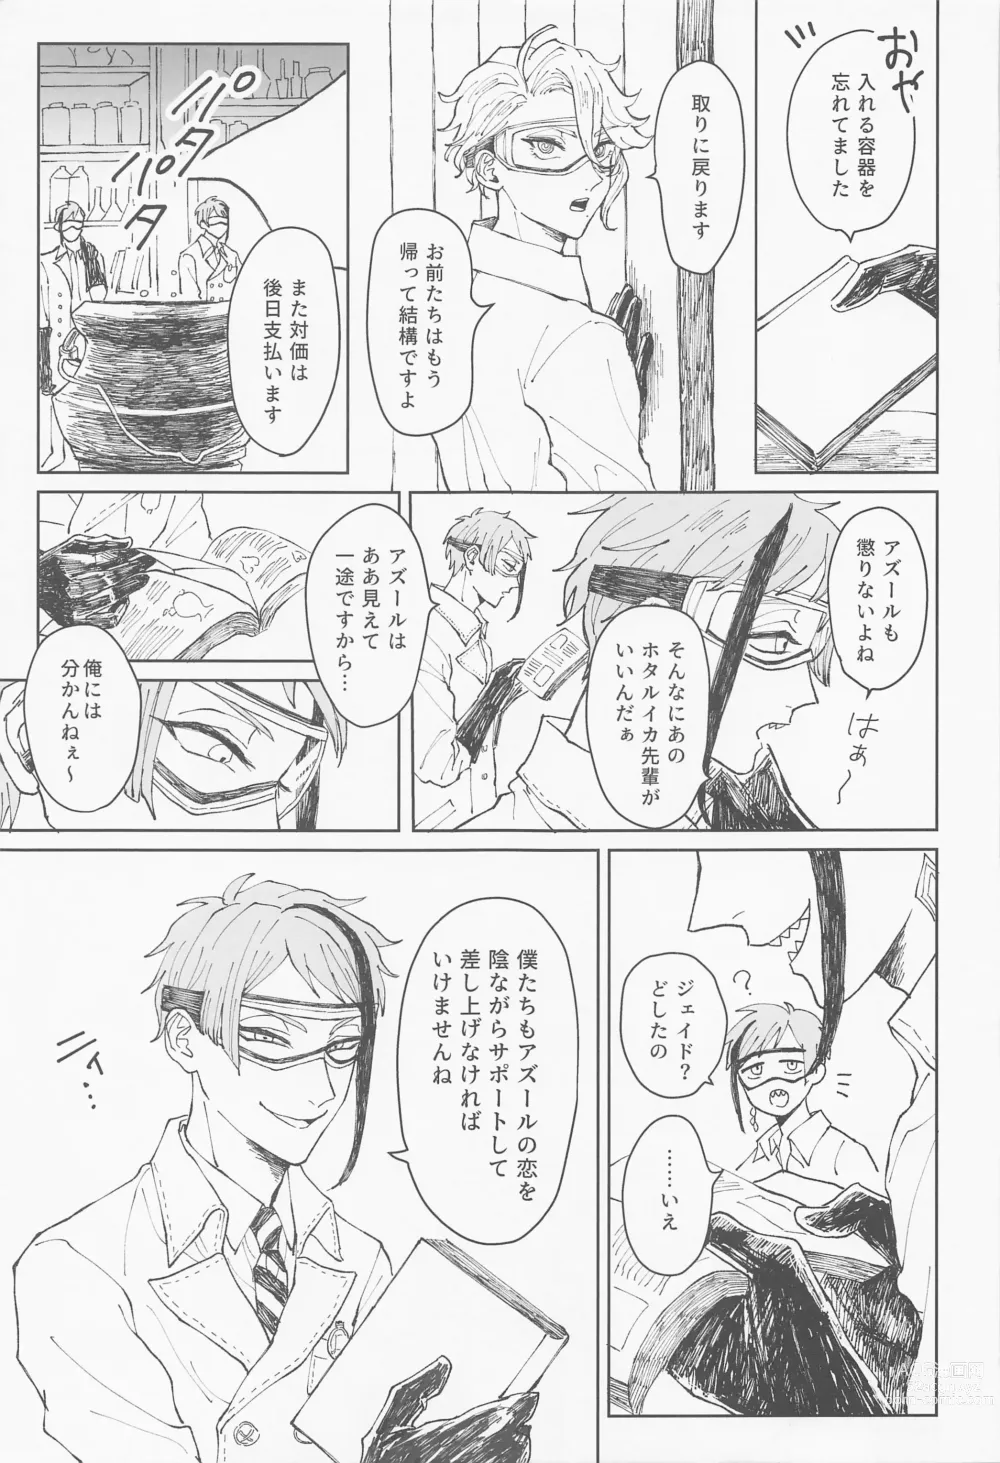 Page 4 of doujinshi Boku wa Zettai Otoshitai!!!